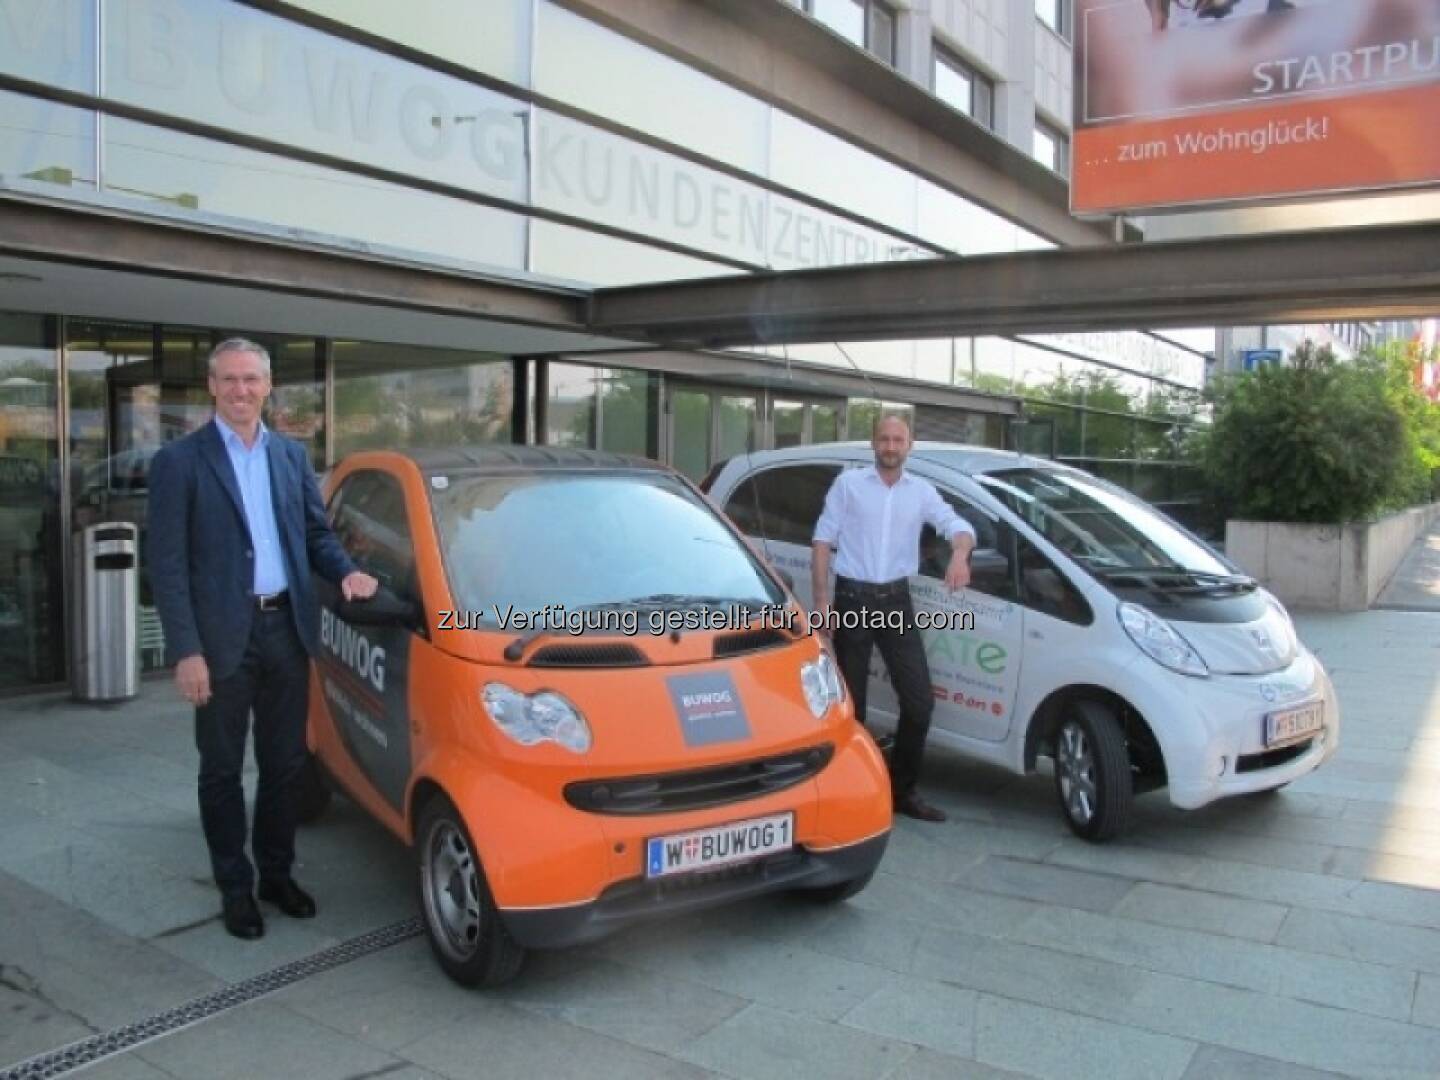 Gerhard Schuster (Geschäftsleitung Bewog) und Michael Herbek (Energiemanager der Bewog) mit Elektro-Fahrzeugen - mehr unter http://blog.immofinanz.com/de/2013/08/16/was-sich-die-buwog-bis-2020-vorgenommen-hat/